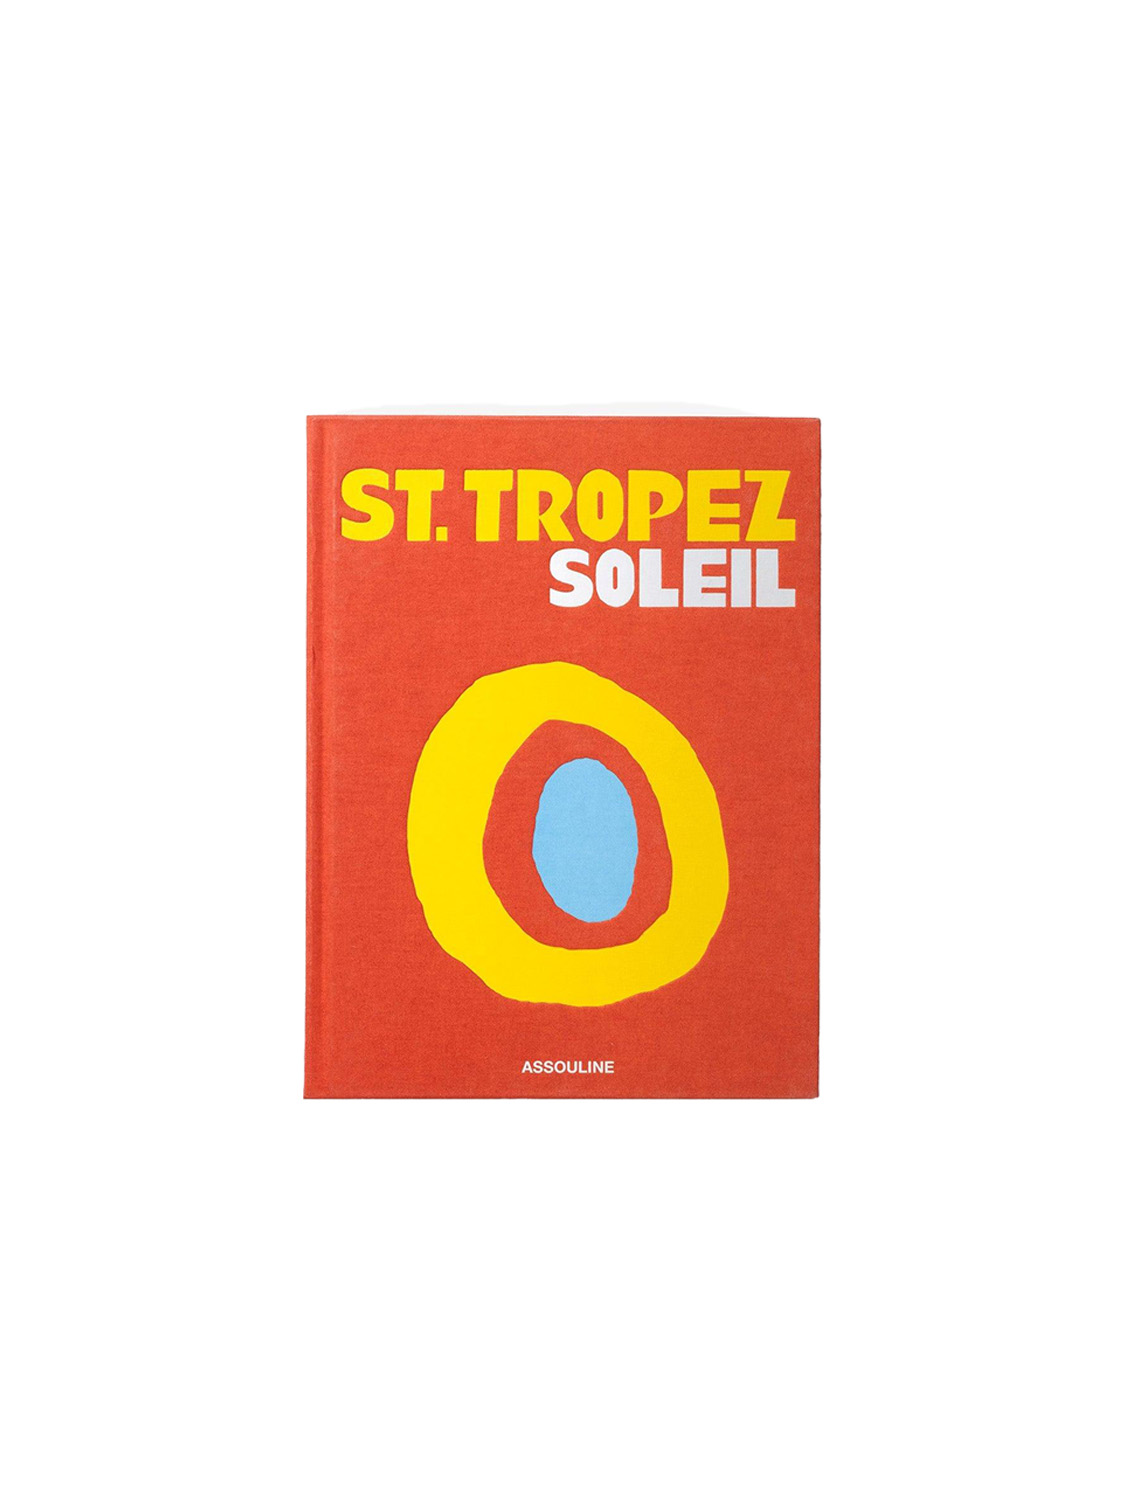 St. Tropez Soleil - Libro da caffè